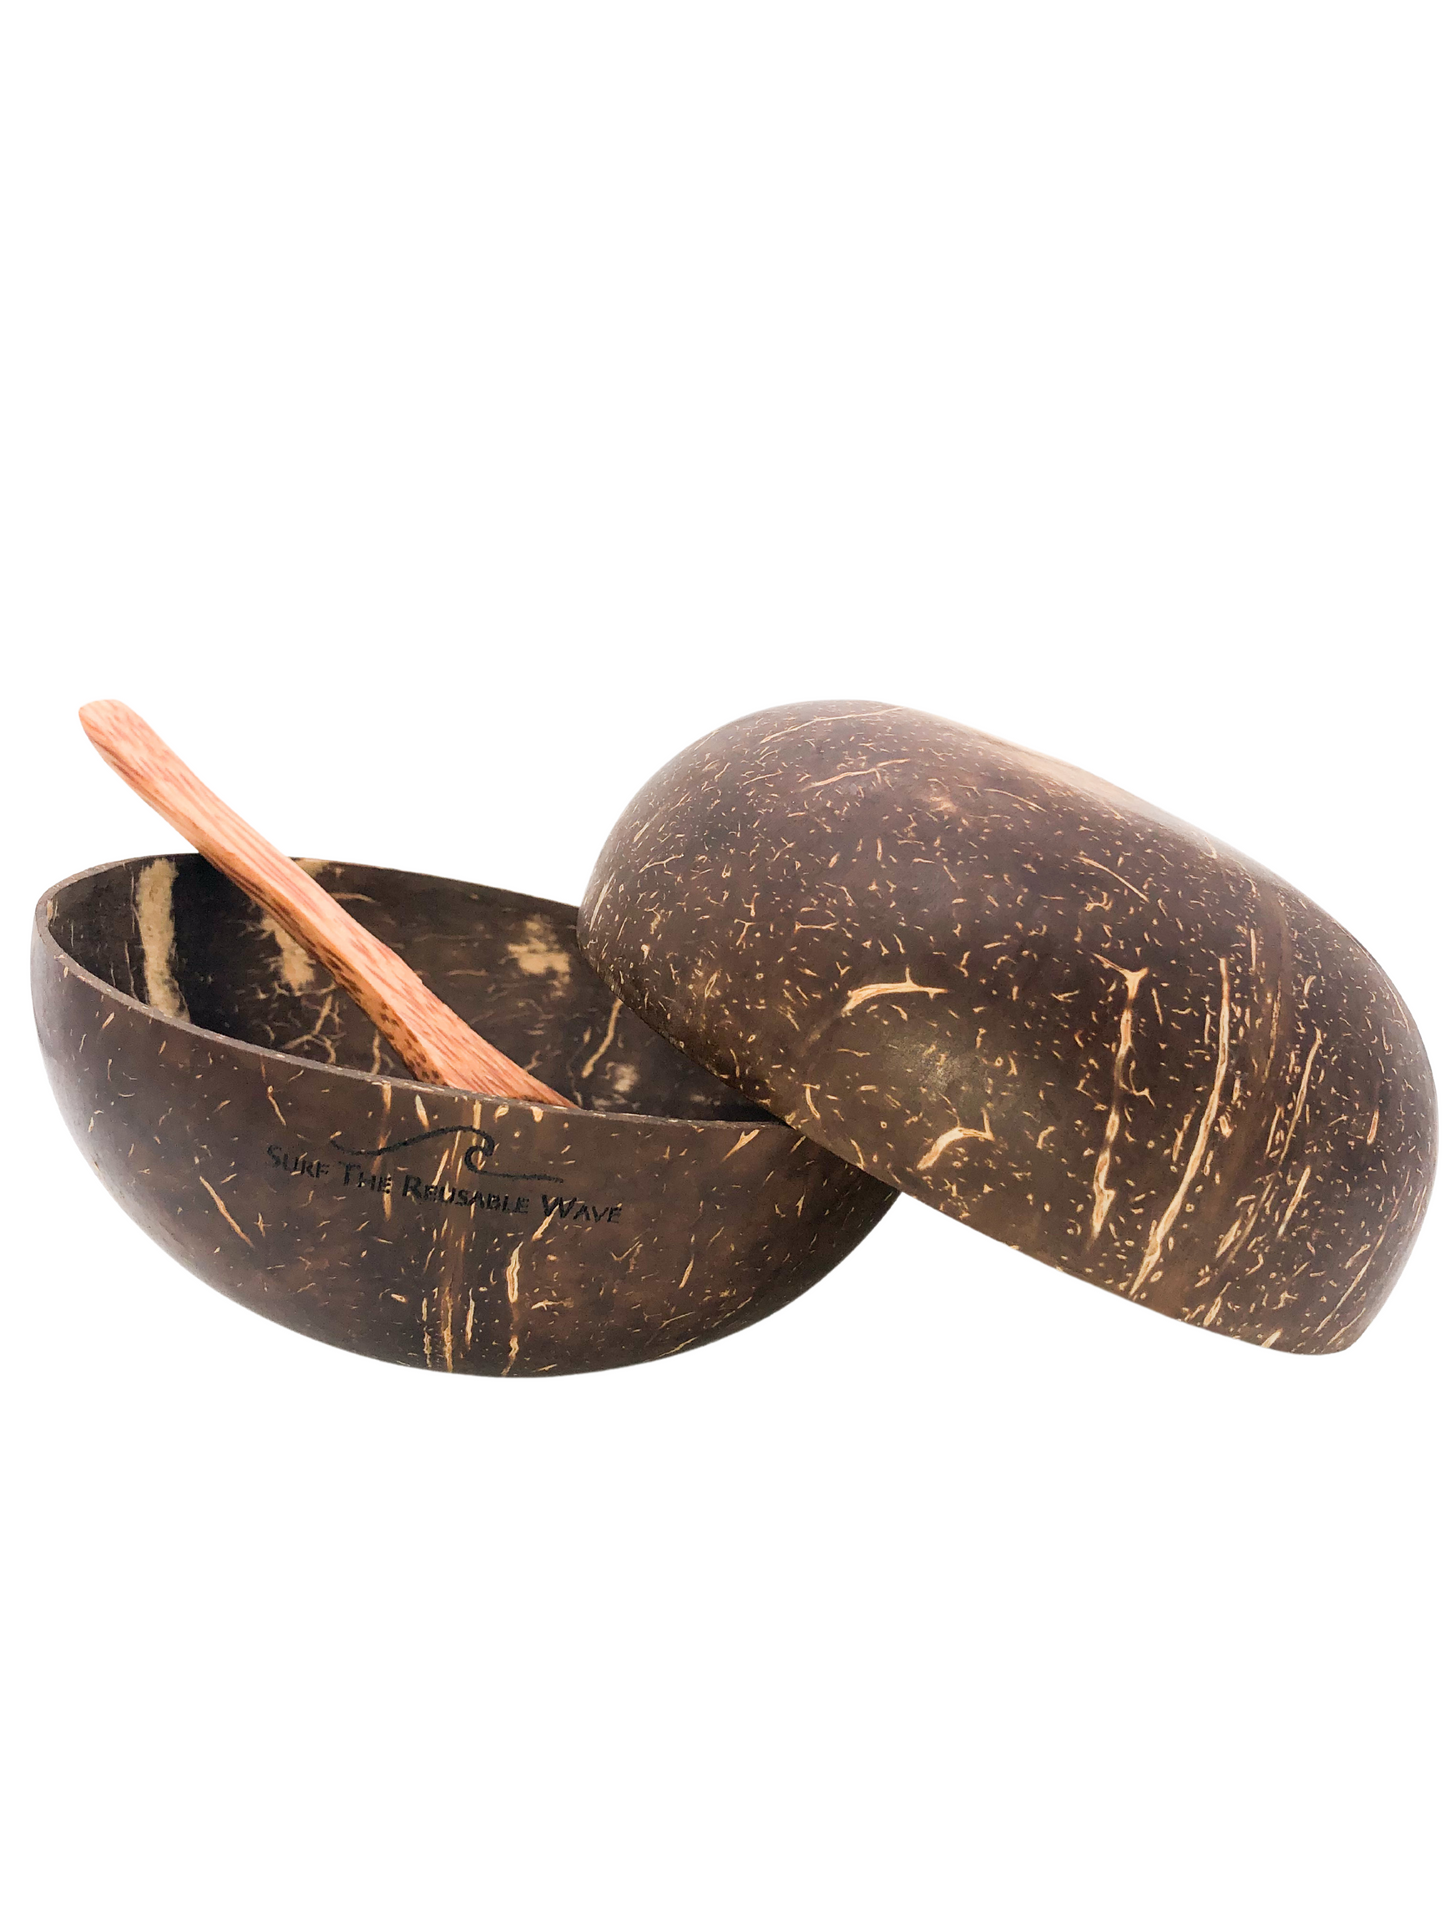 Coconut Bowl Set Bundles